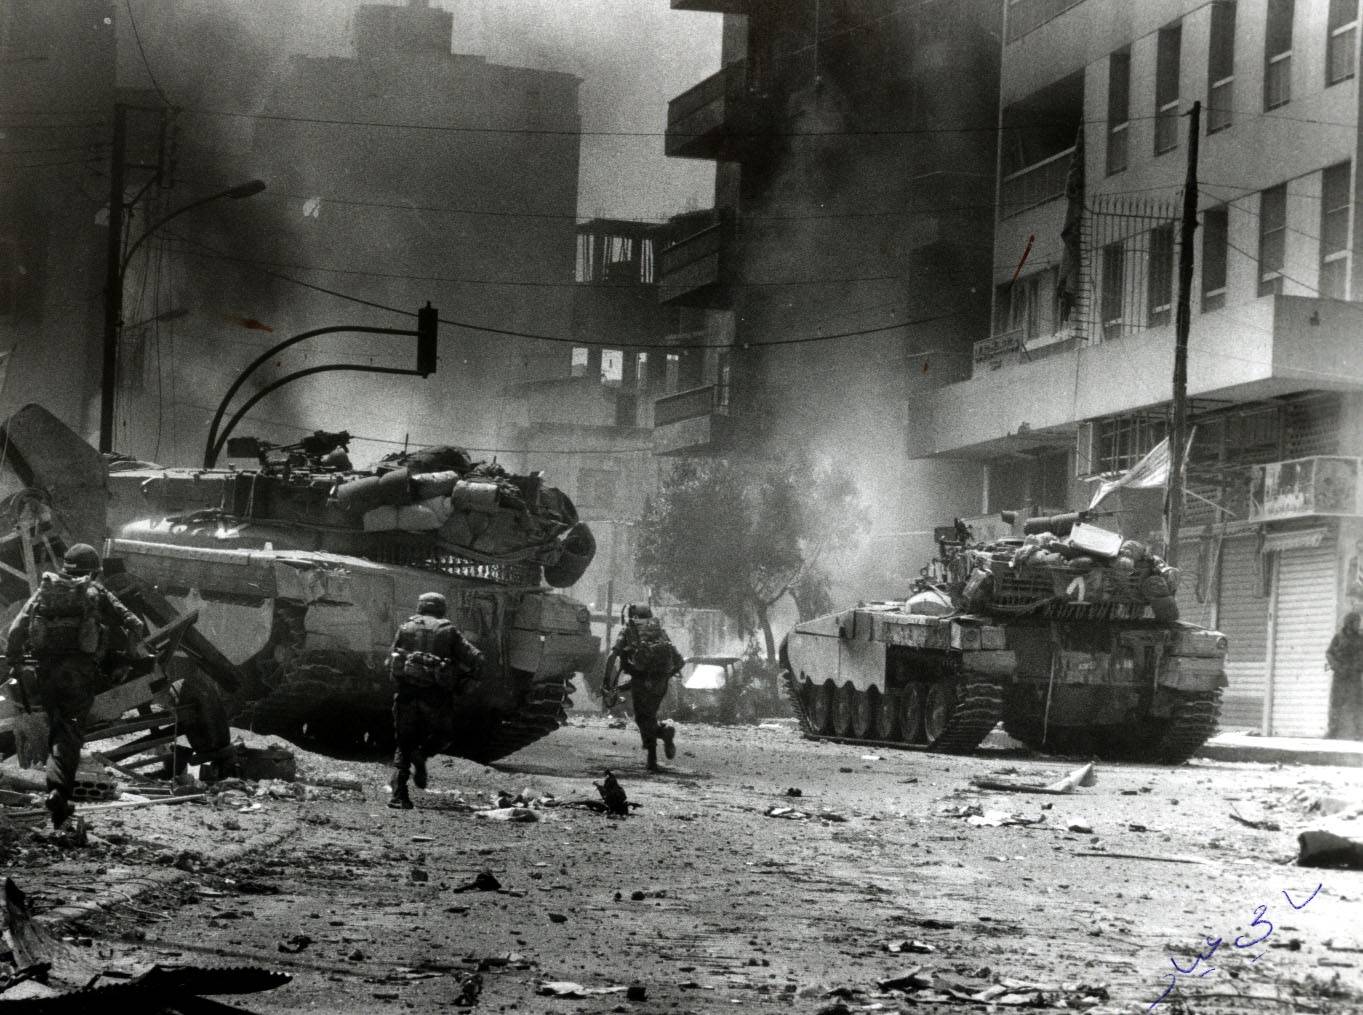 Израильские танки Меркава Мк1 ведут бой в городе. Бейрут.1982г.